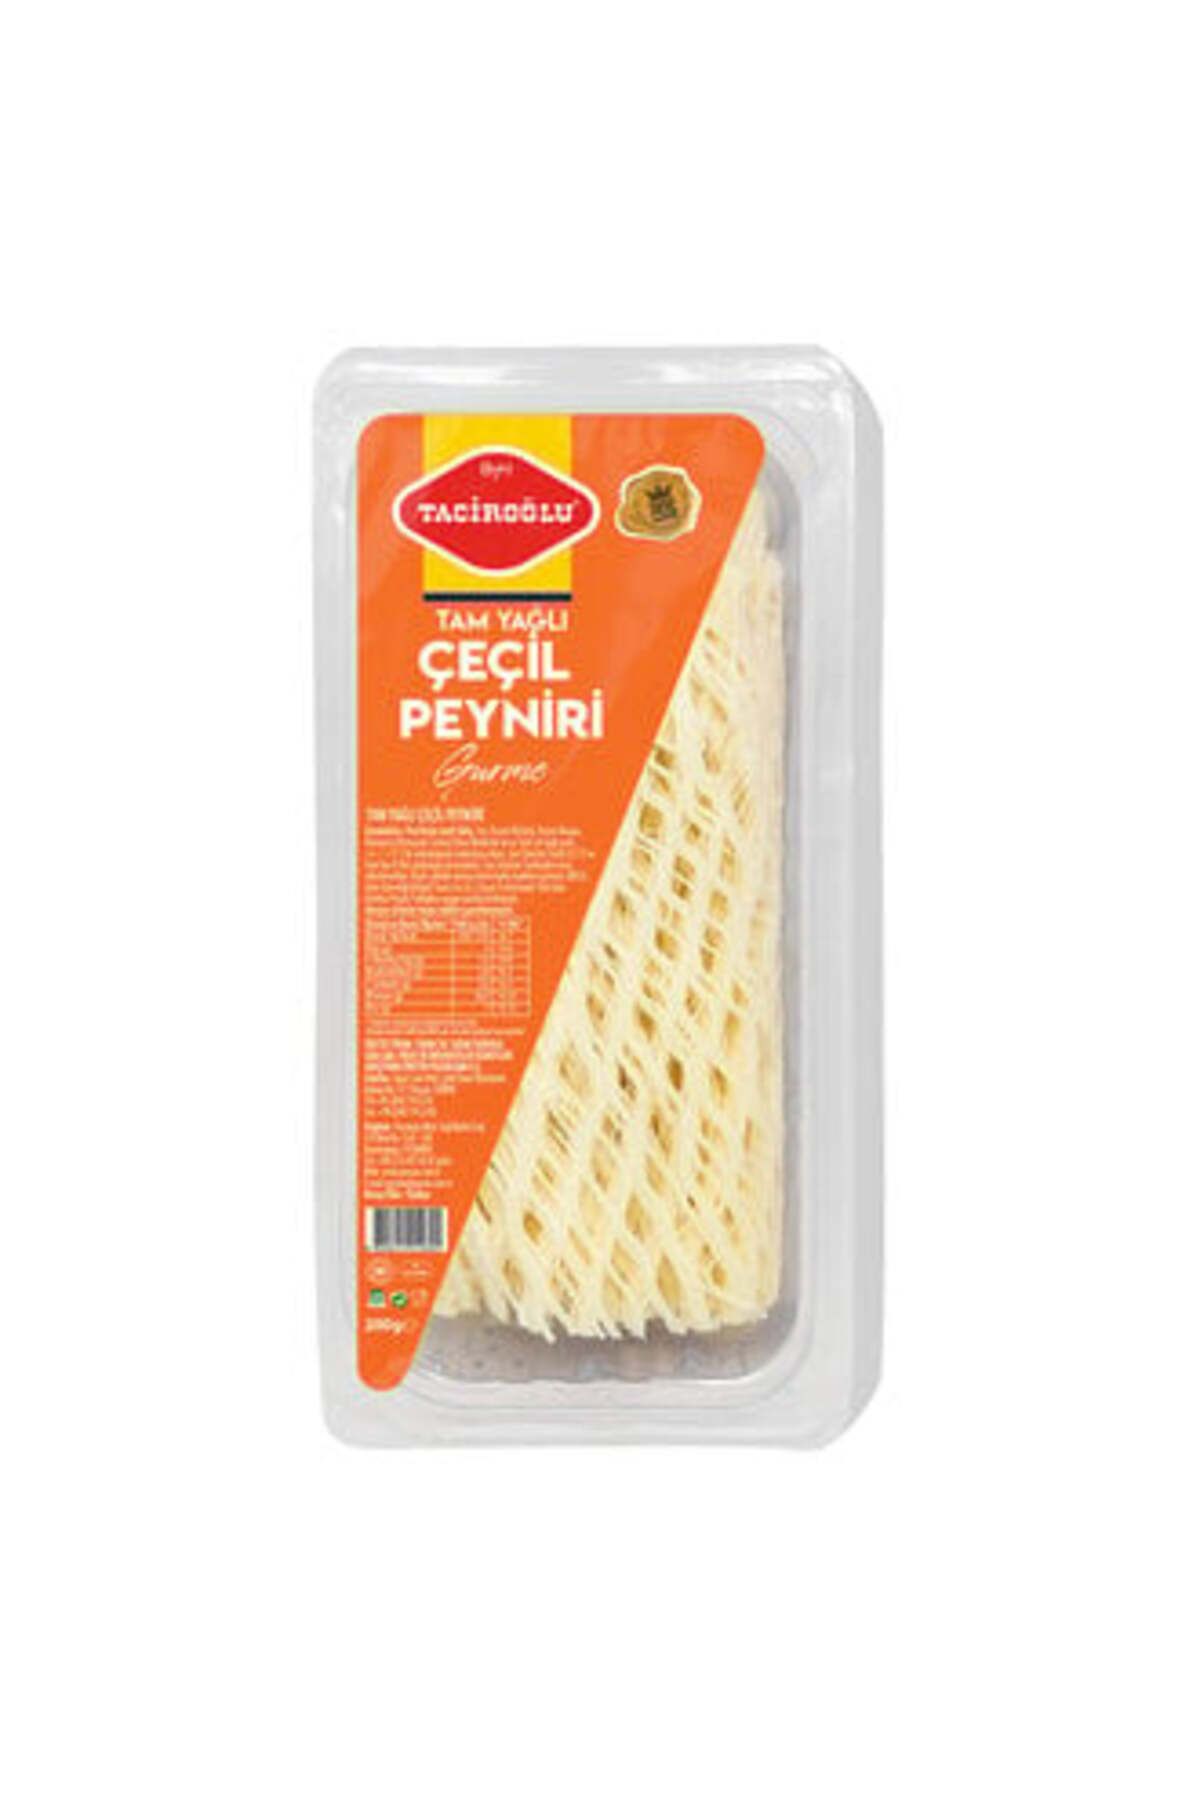 Taciroğlu ( MİNİ TEREYAĞ HEDİYE ) Taciroğlu Tam Yağlı Çeçil Peyniri 200 Gr